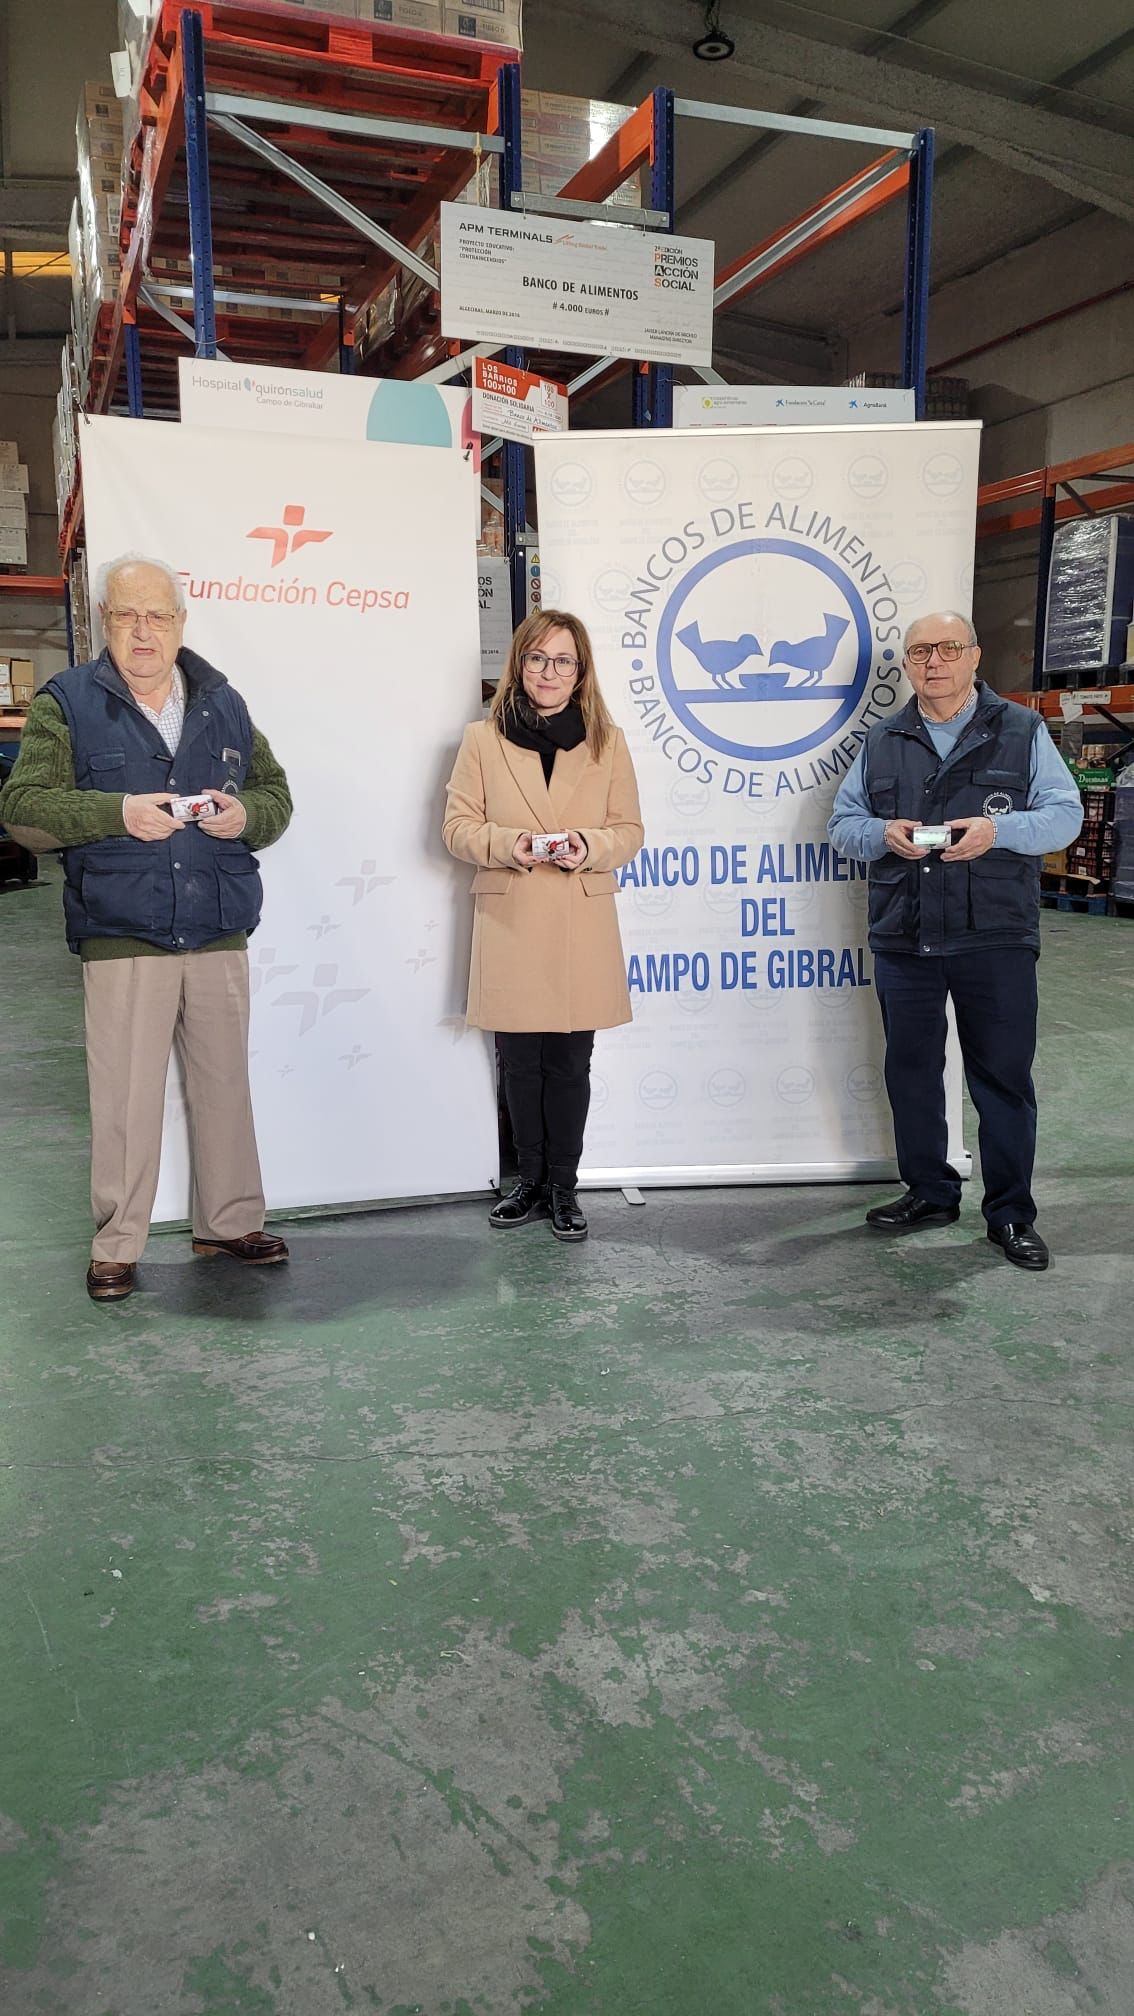 Momento en el que Fundación Cepsa ha donado al Banco de Alimentos del Campo de Gibraltar tarjetas de combustible.